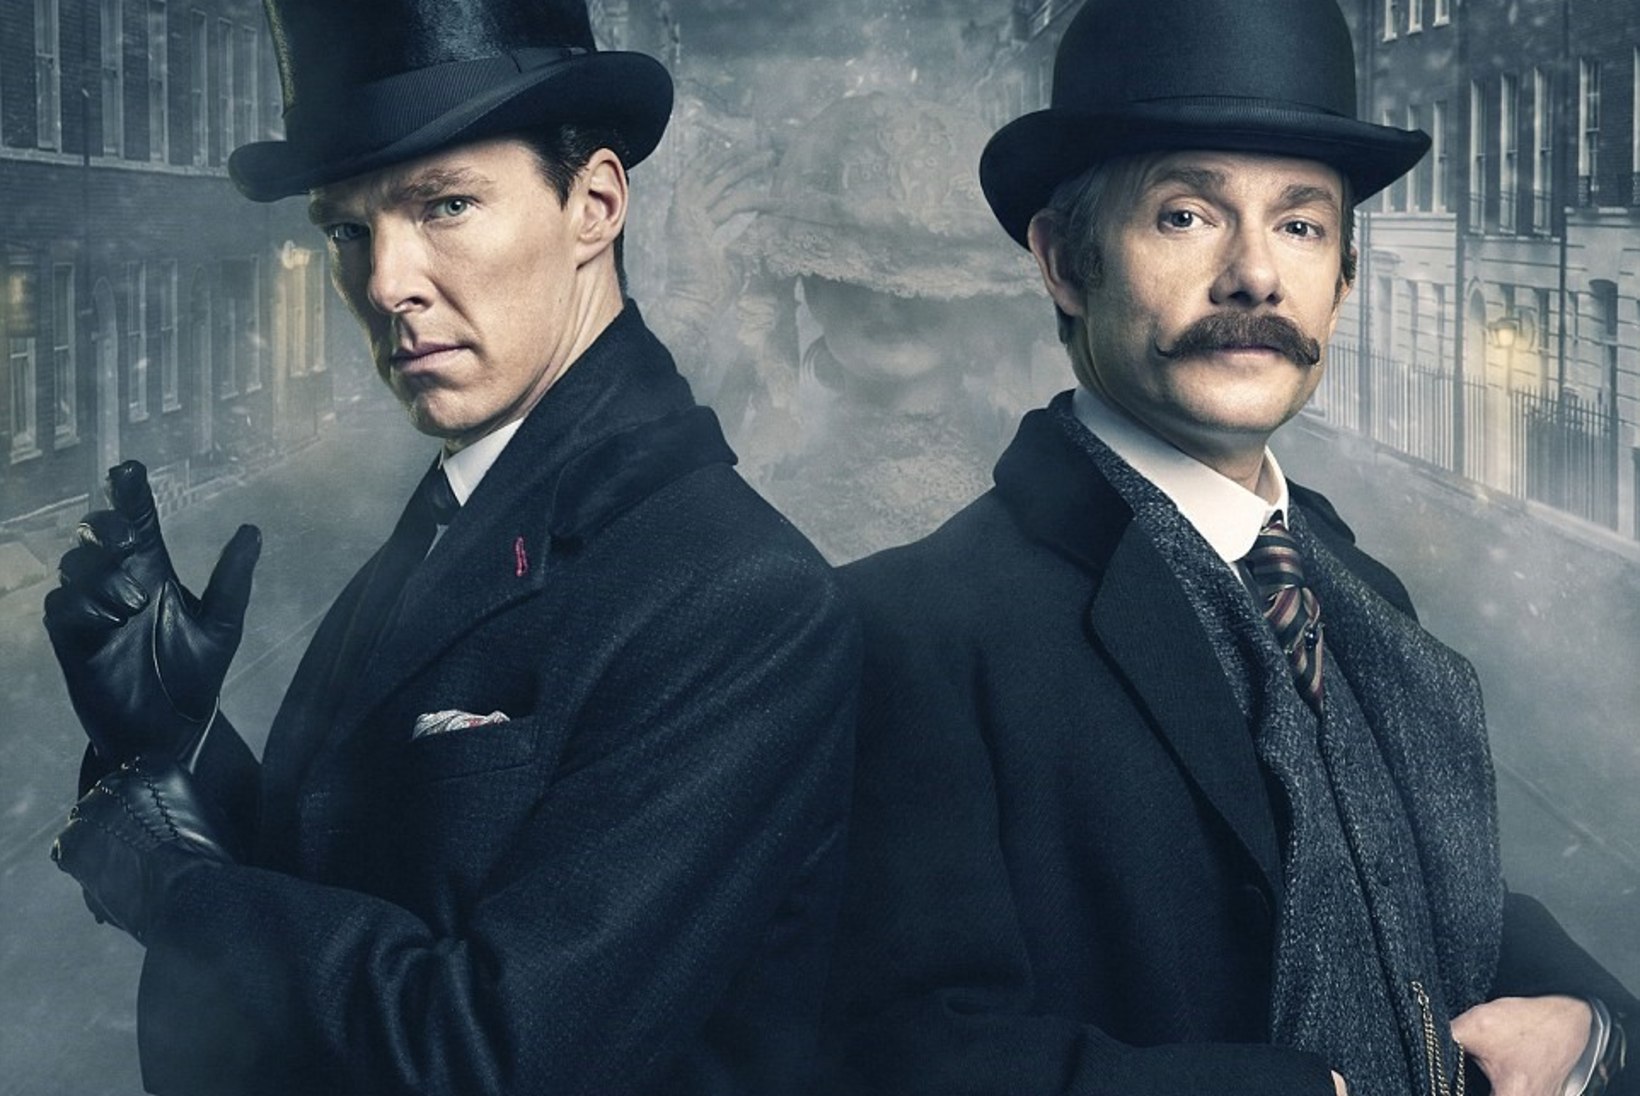 ETV näitab populaarse krimisarja "Sherlock Holmes" uut hooaega